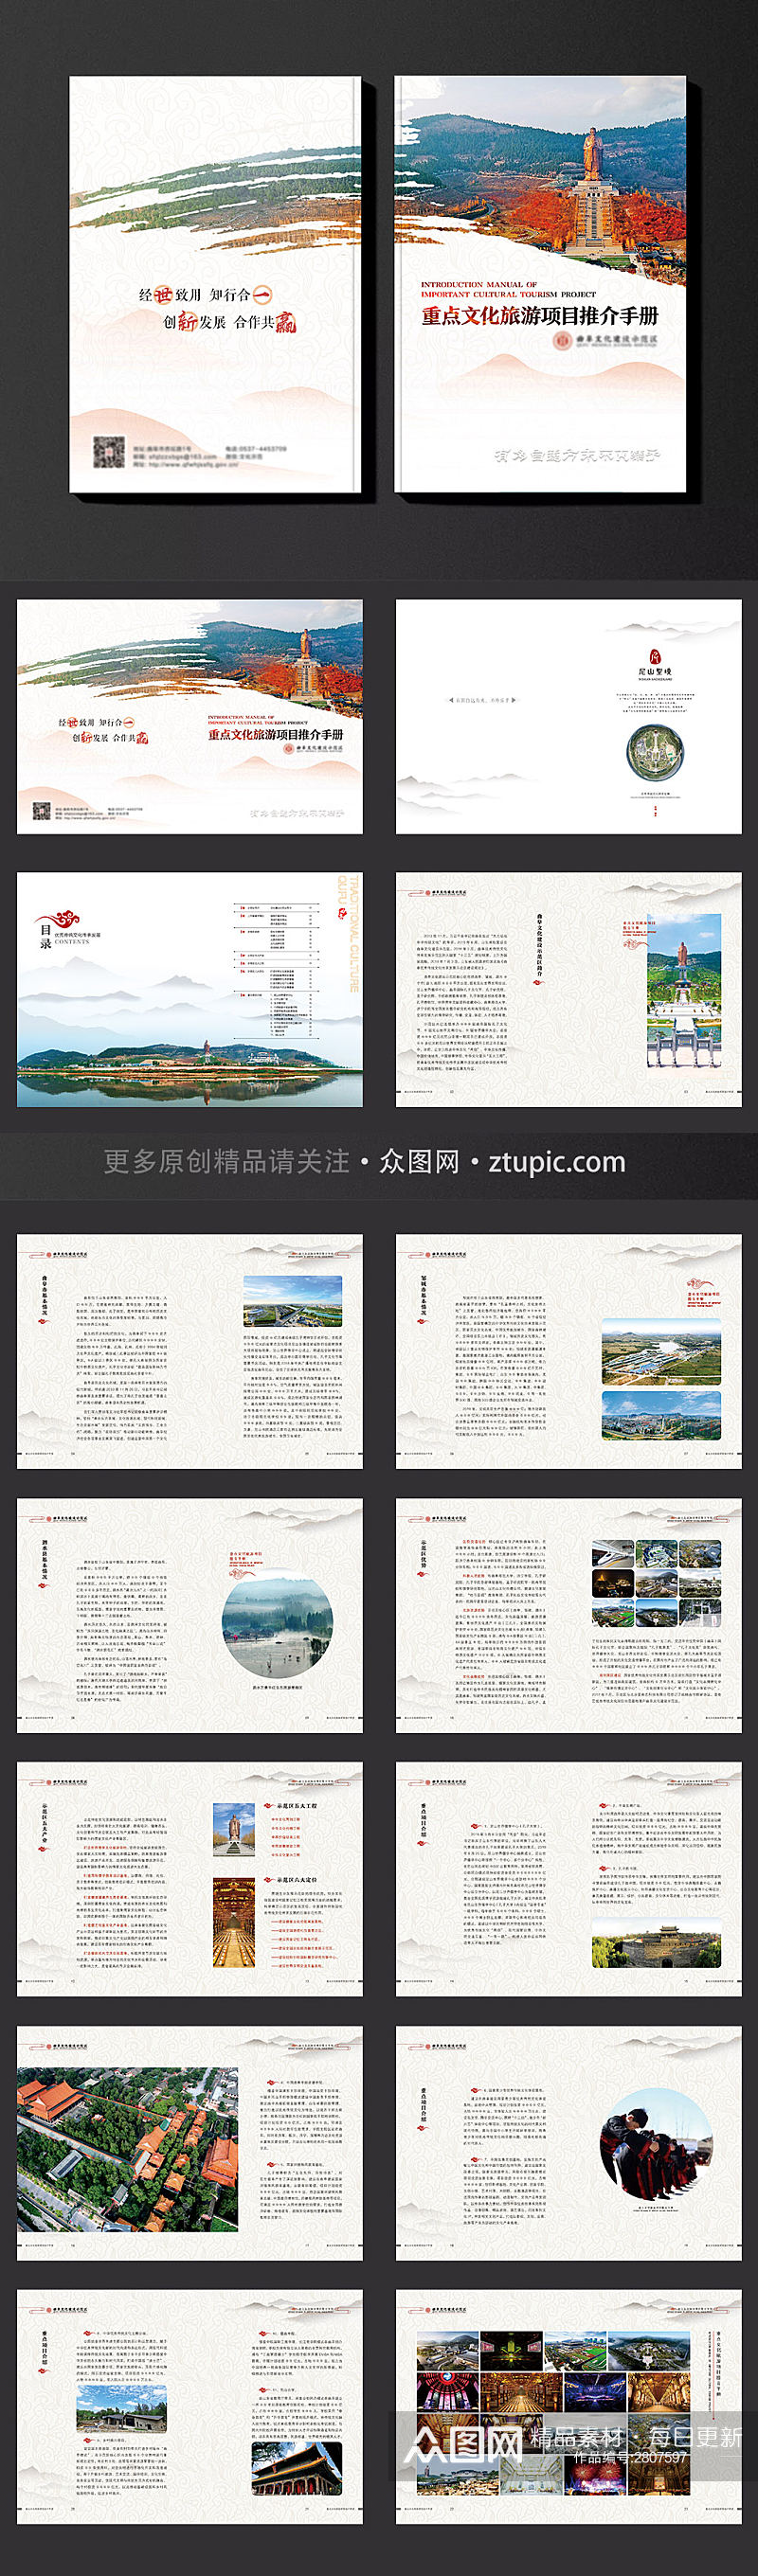 重点文化旅游项目推介手册招商手册素材